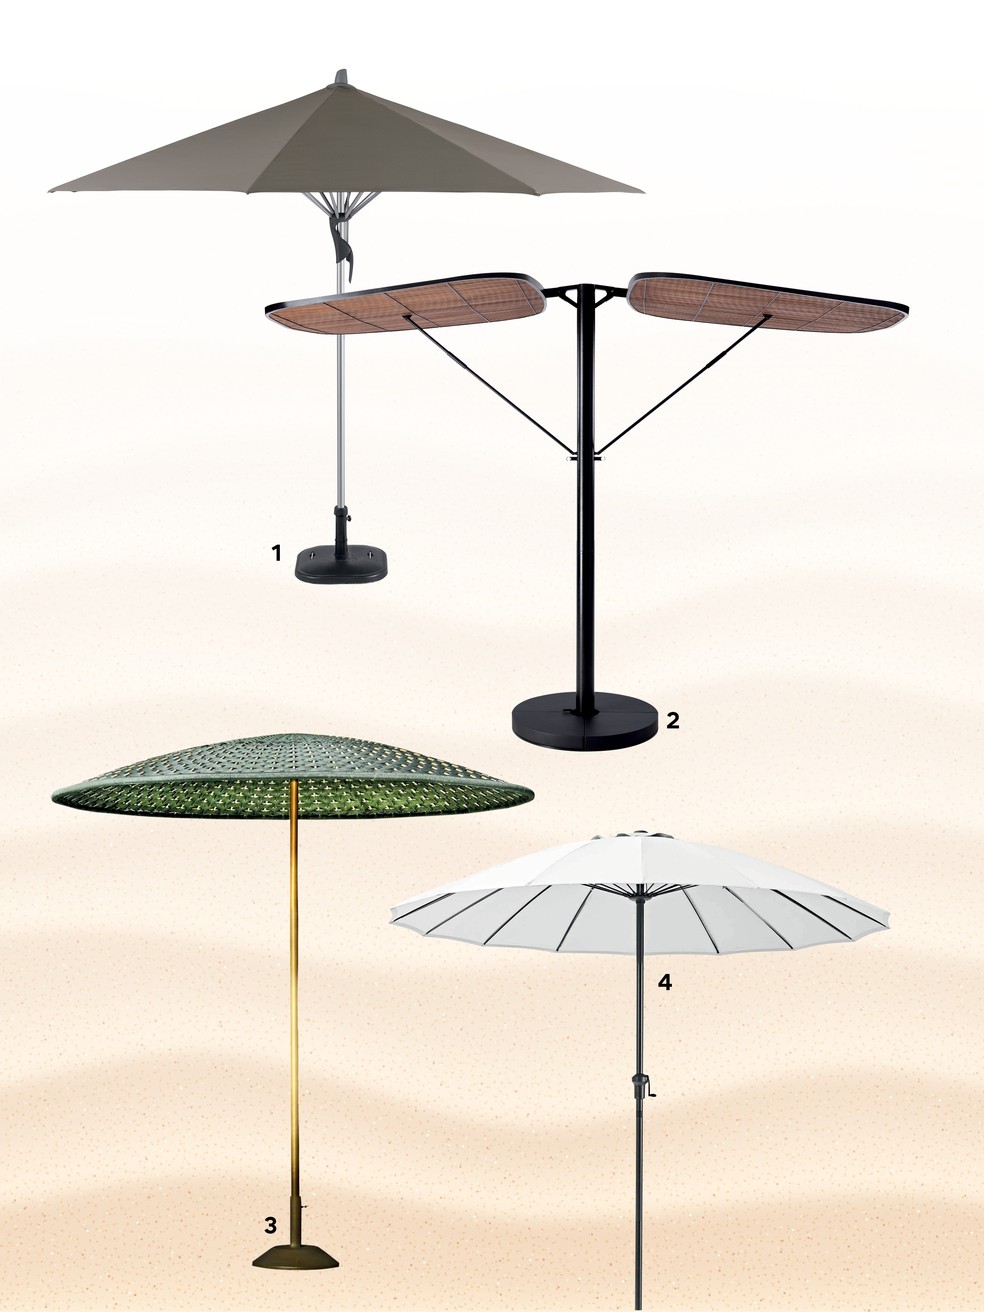 Ombrelones: invista na peça para trazer sombra e conforto à área externa — Foto: Divulgação/Arte sobre foto Getty Image